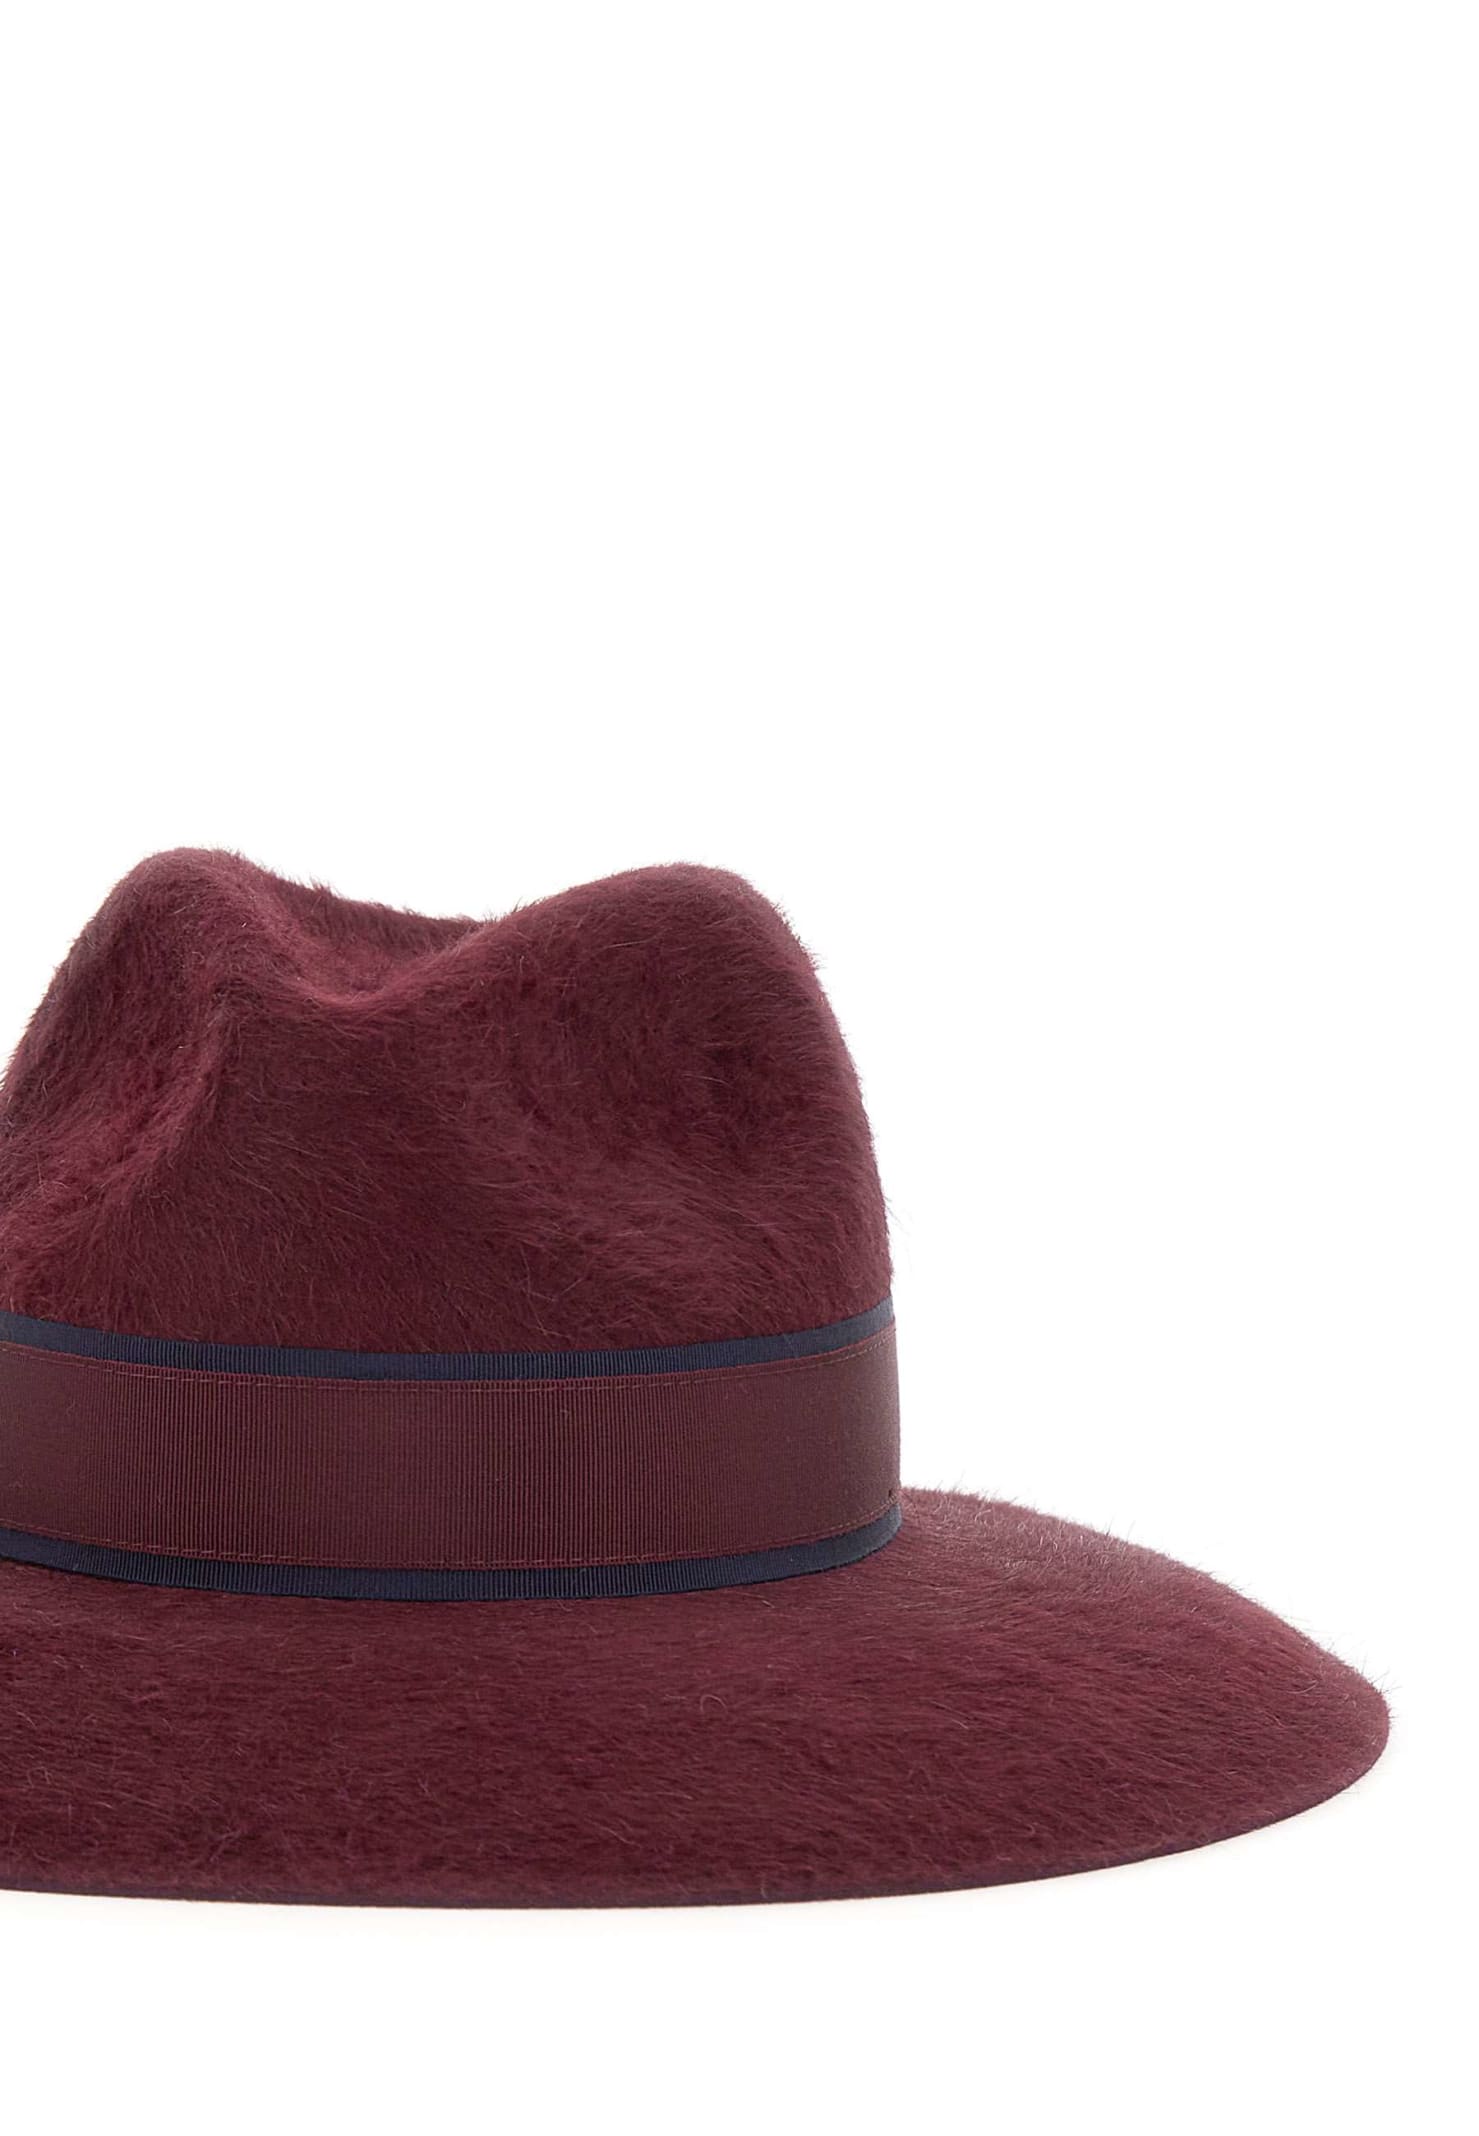 Shop Borsalino Felt Hat In Bordeaux